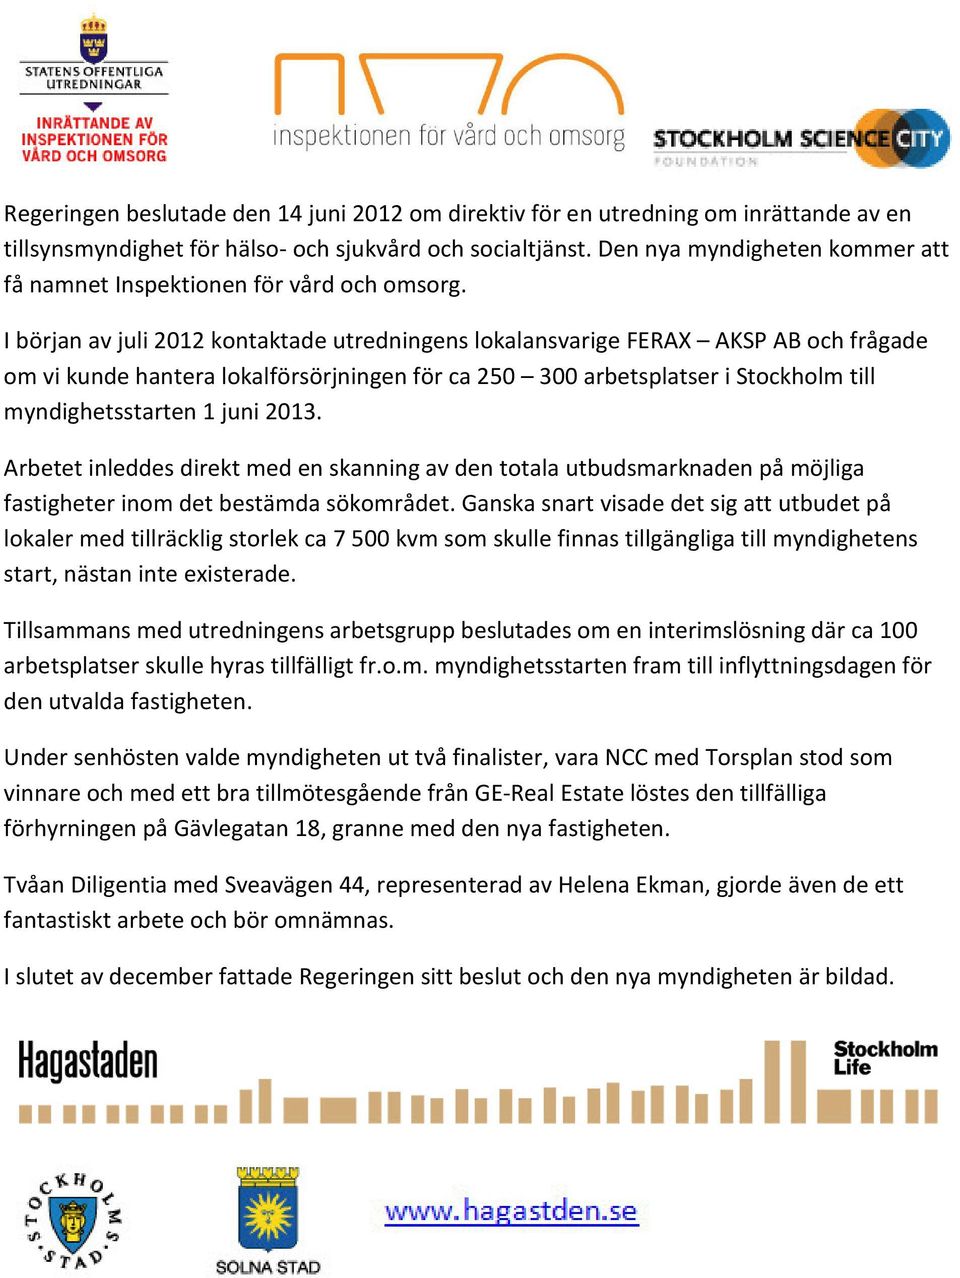 I början av juli 2012 kontaktade utredningens lokalansvarige FERAX AKSP AB och frågade om vi kunde hantera lokalförsörjningen för ca 250 300 arbetsplatser i Stockholm till myndighetsstarten 1 juni